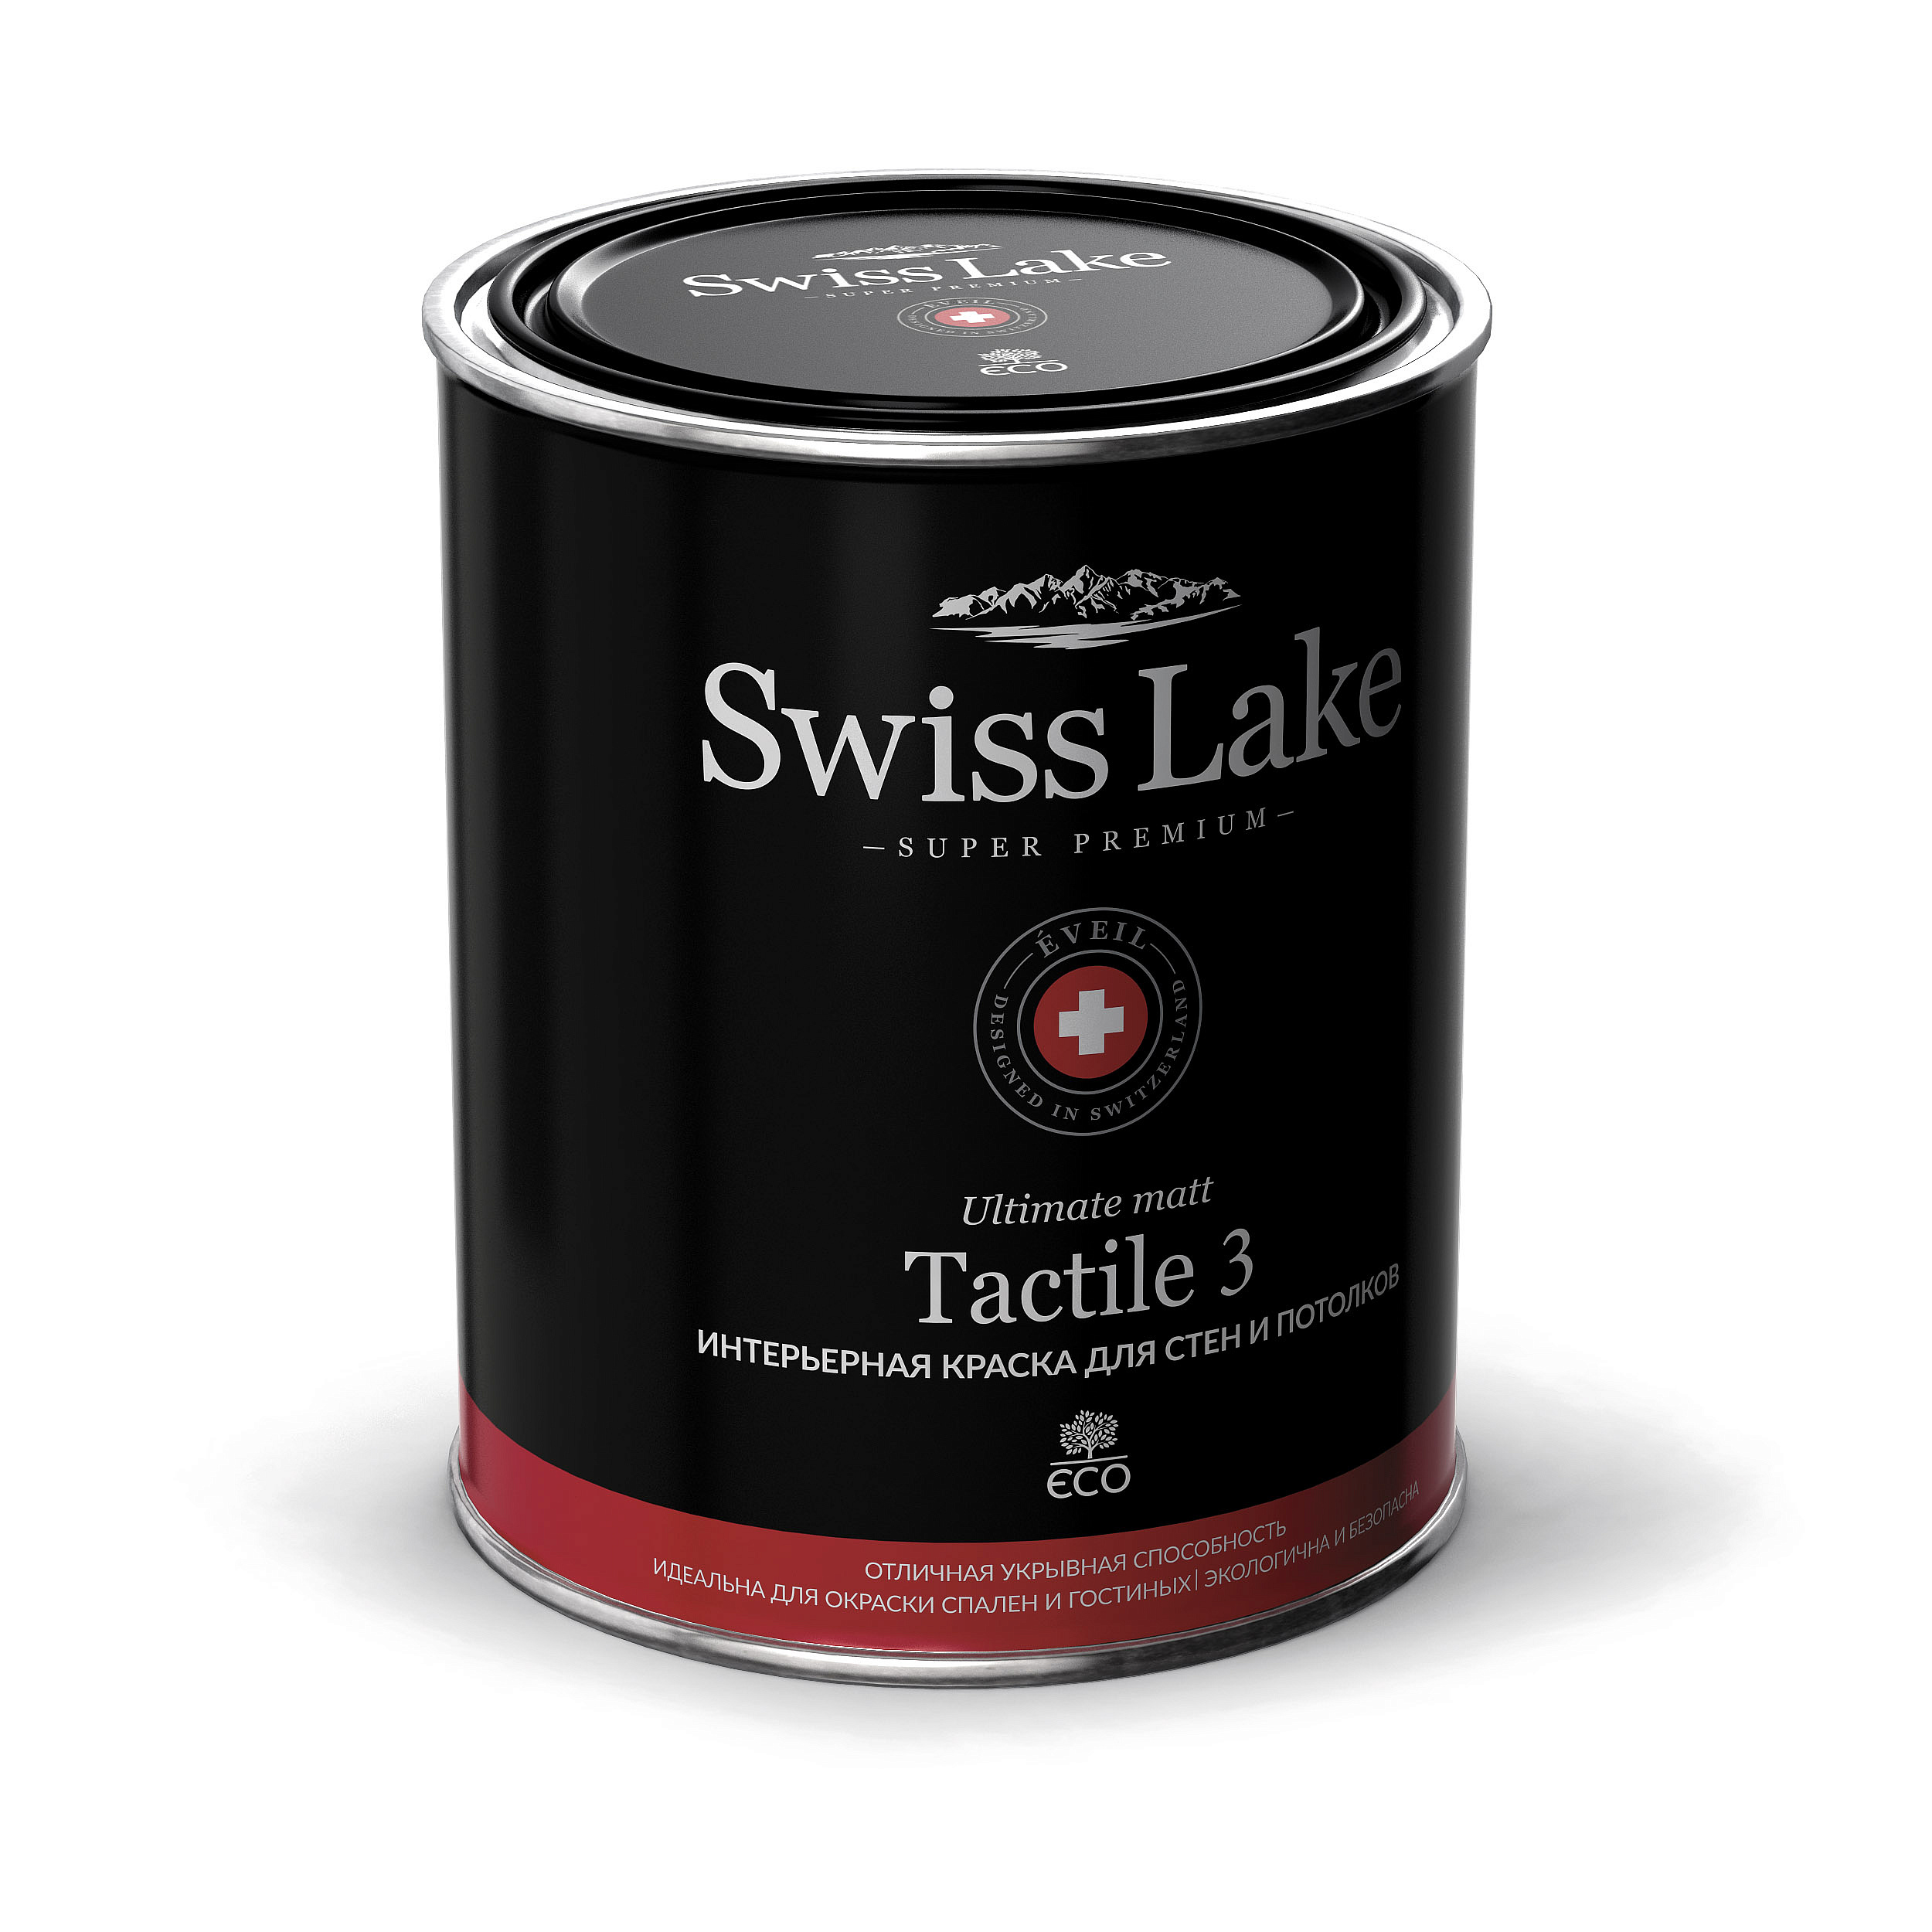 Купить интерьерная краска для стен и потолков tactile 3 (swiss lake) от официального дилера SWISS LAKE